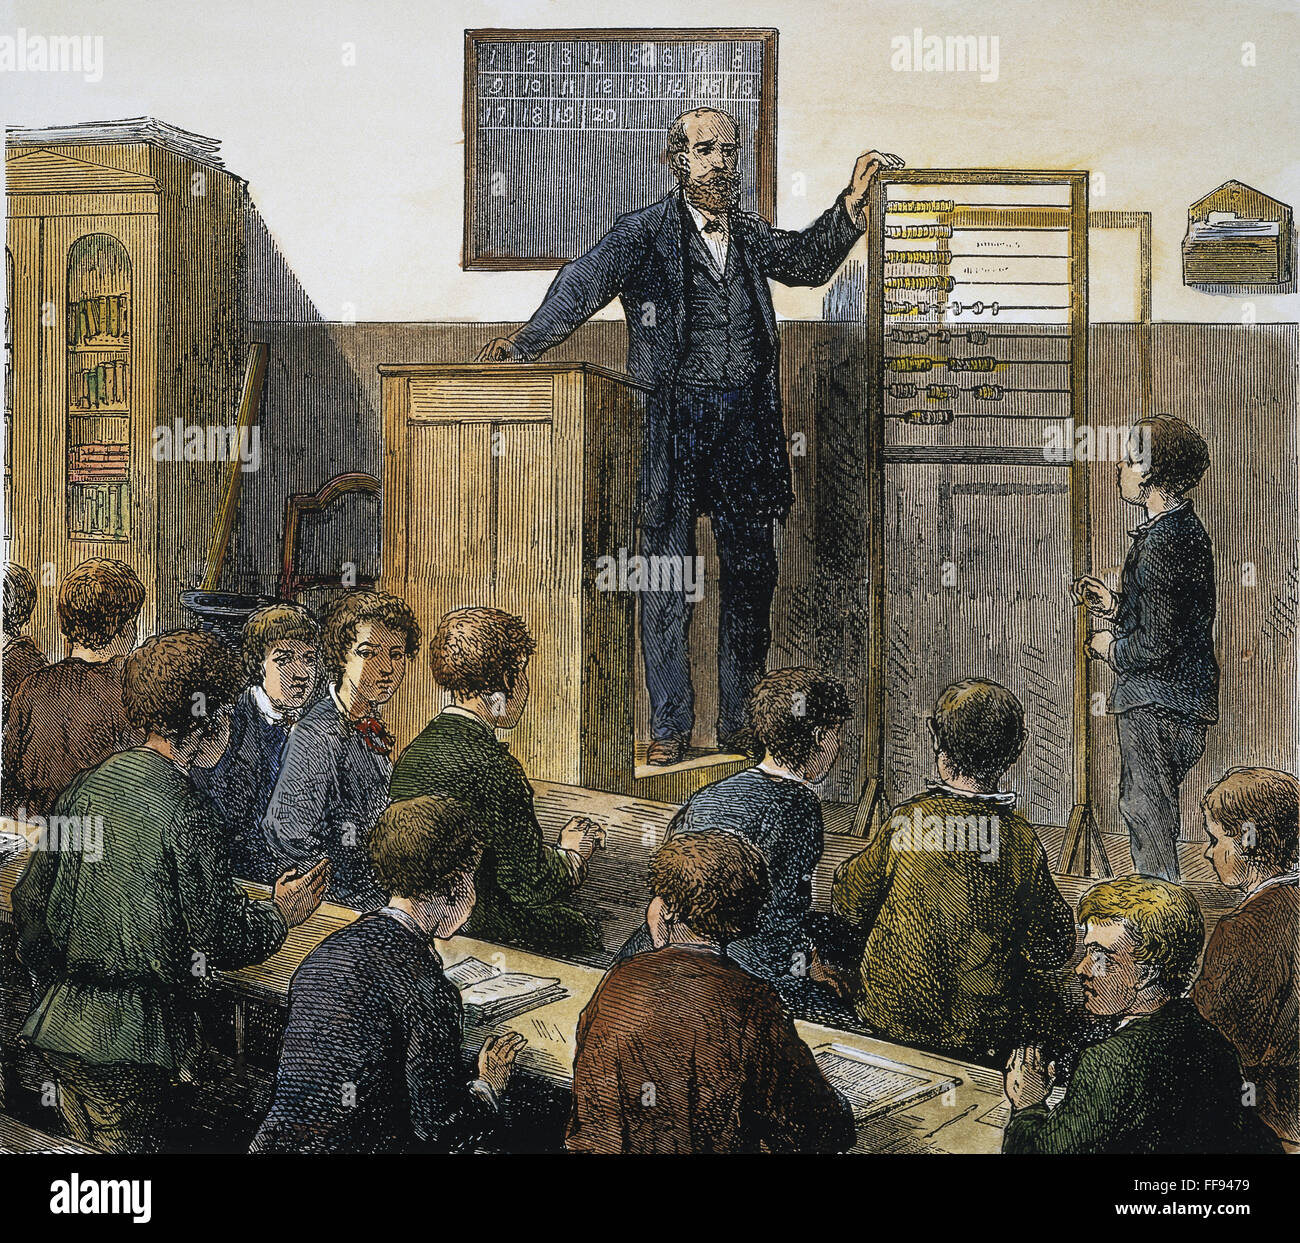 Scuola elementare. /NA matematica lezione nell'uso di un abaco presso una scuola elementare a Berlino, Germania. Incisione su legno, fine del XIX secolo. Foto Stock